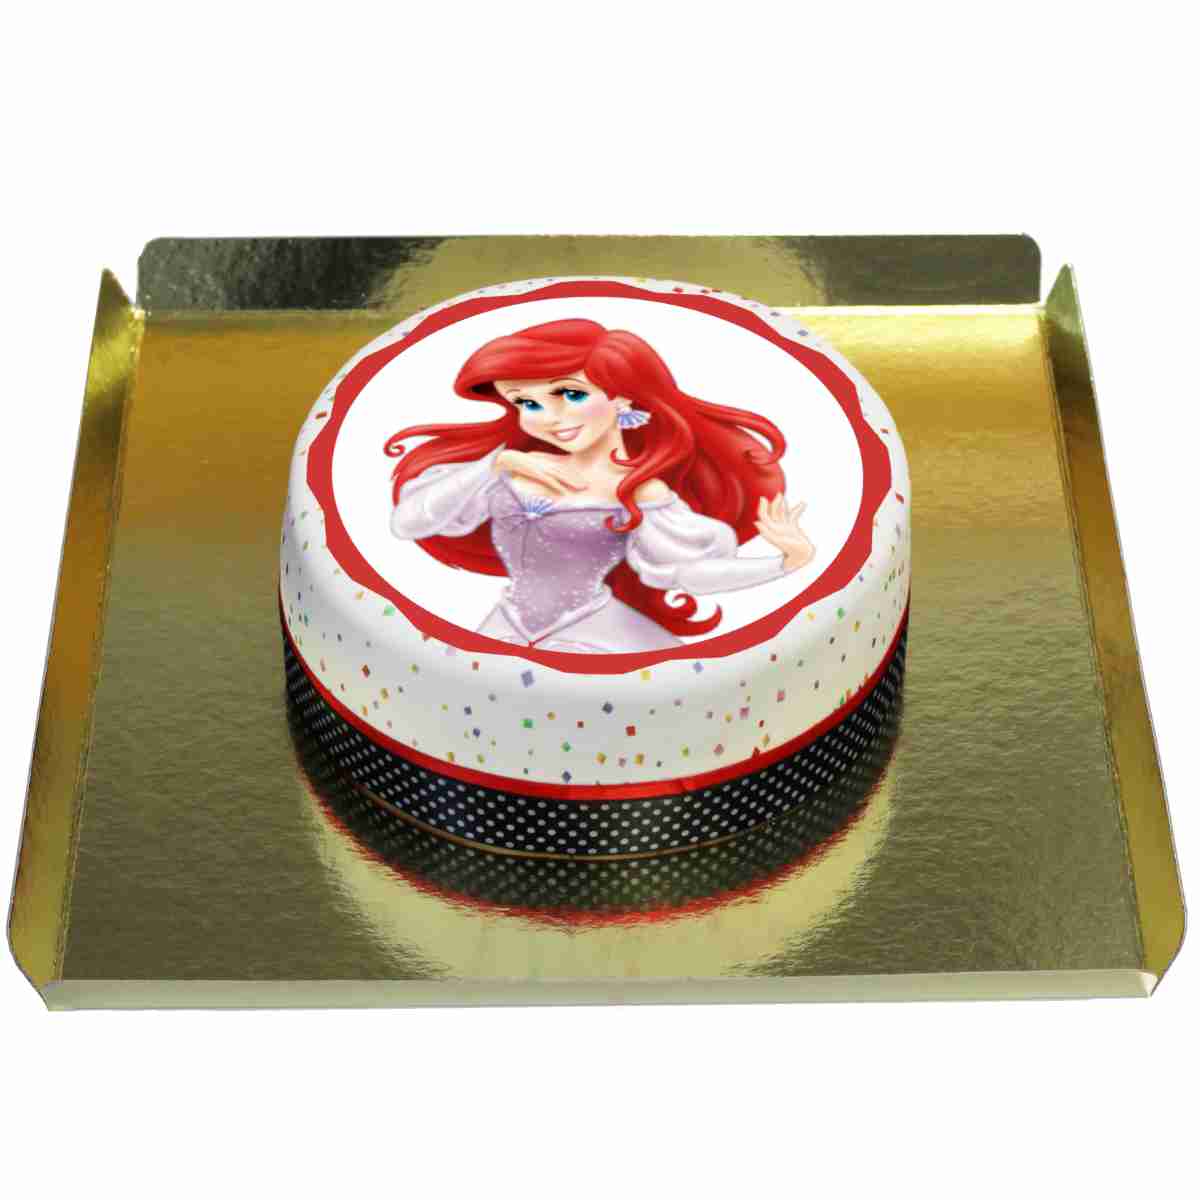 Prenses Ariel Doğum Günü Pastası